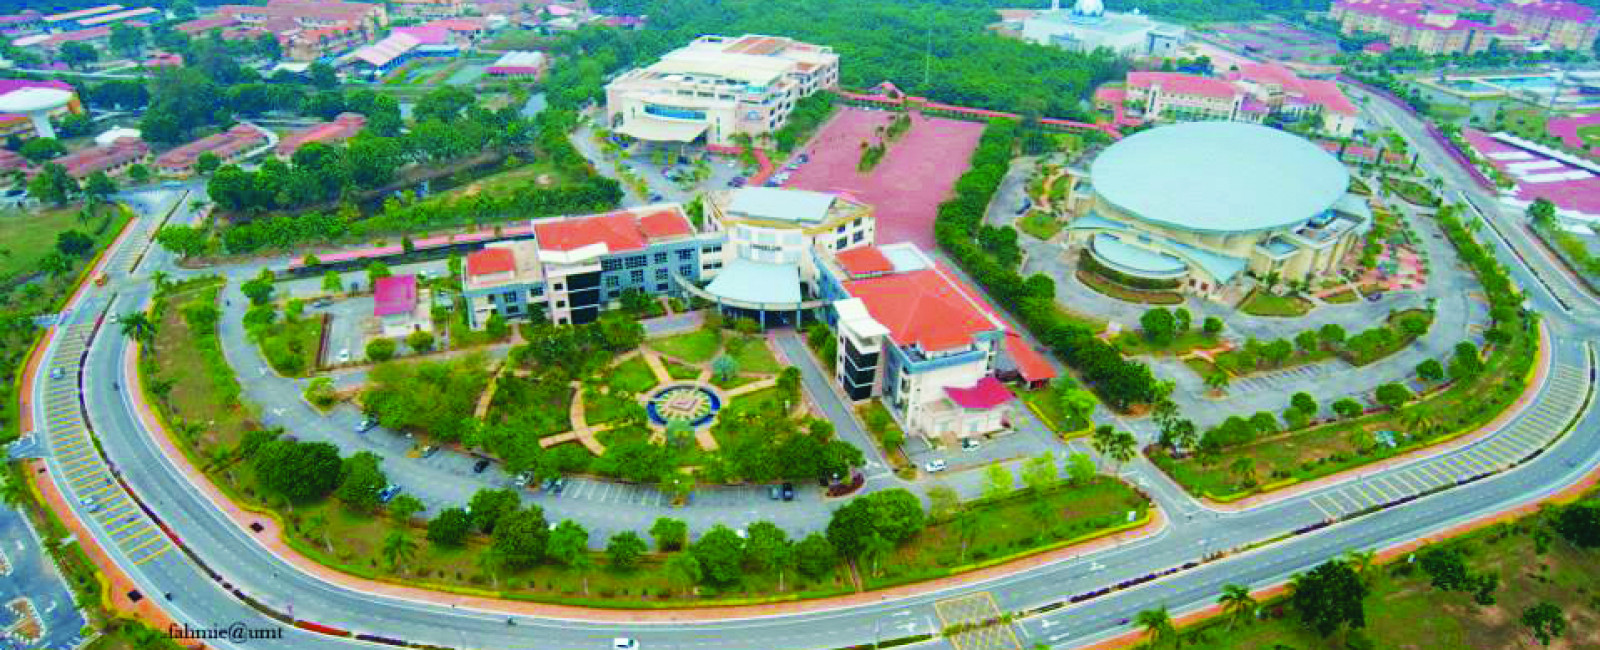 Universiti Malaysia Terengganu | MyCompass